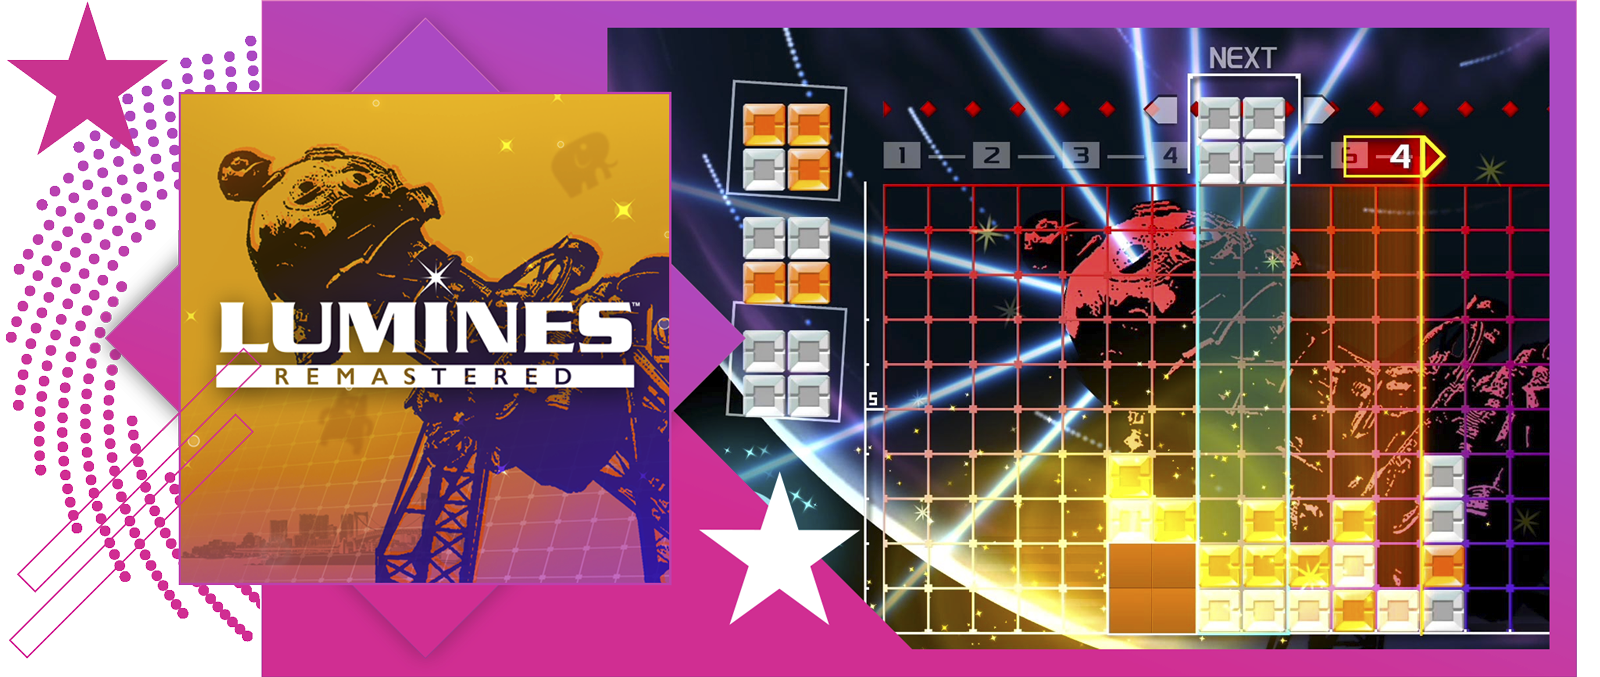 Afbeelding van De beste ritmegames met key-art en gameplay van Lumines Remastered.